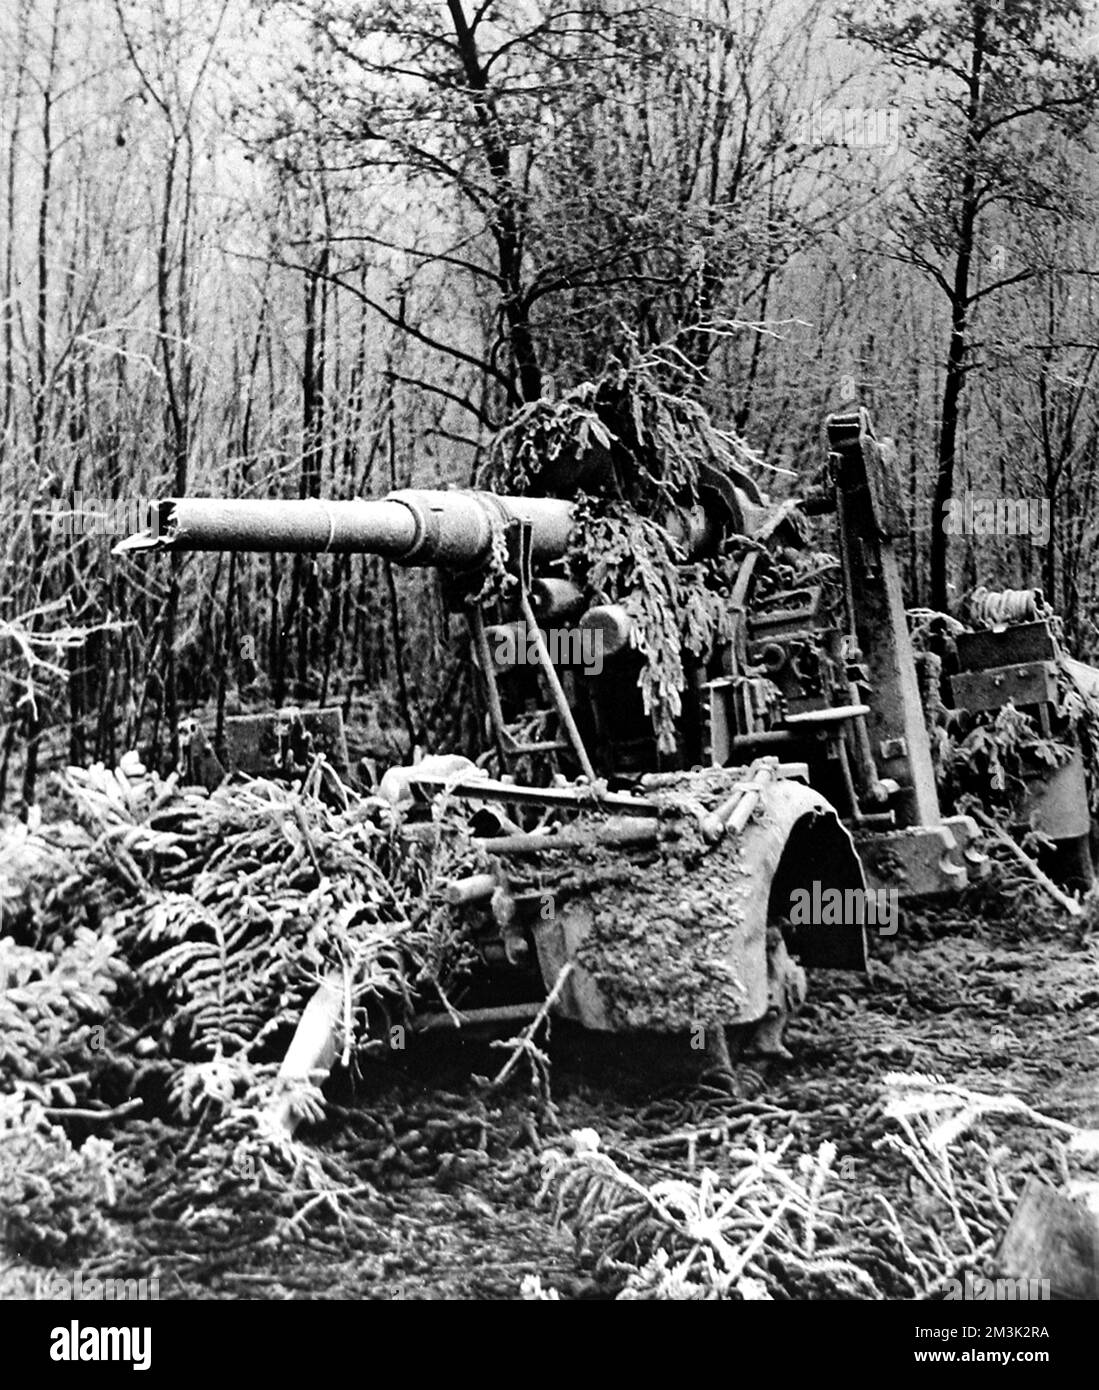 Naufrage d'un fusil anti-avion/anti-char allemand de 88 mm en Belgique, janvier 1945. Cette arme avait été abandonnée par l'armée allemande en retraite après la bataille des Bulges. Banque D'Images